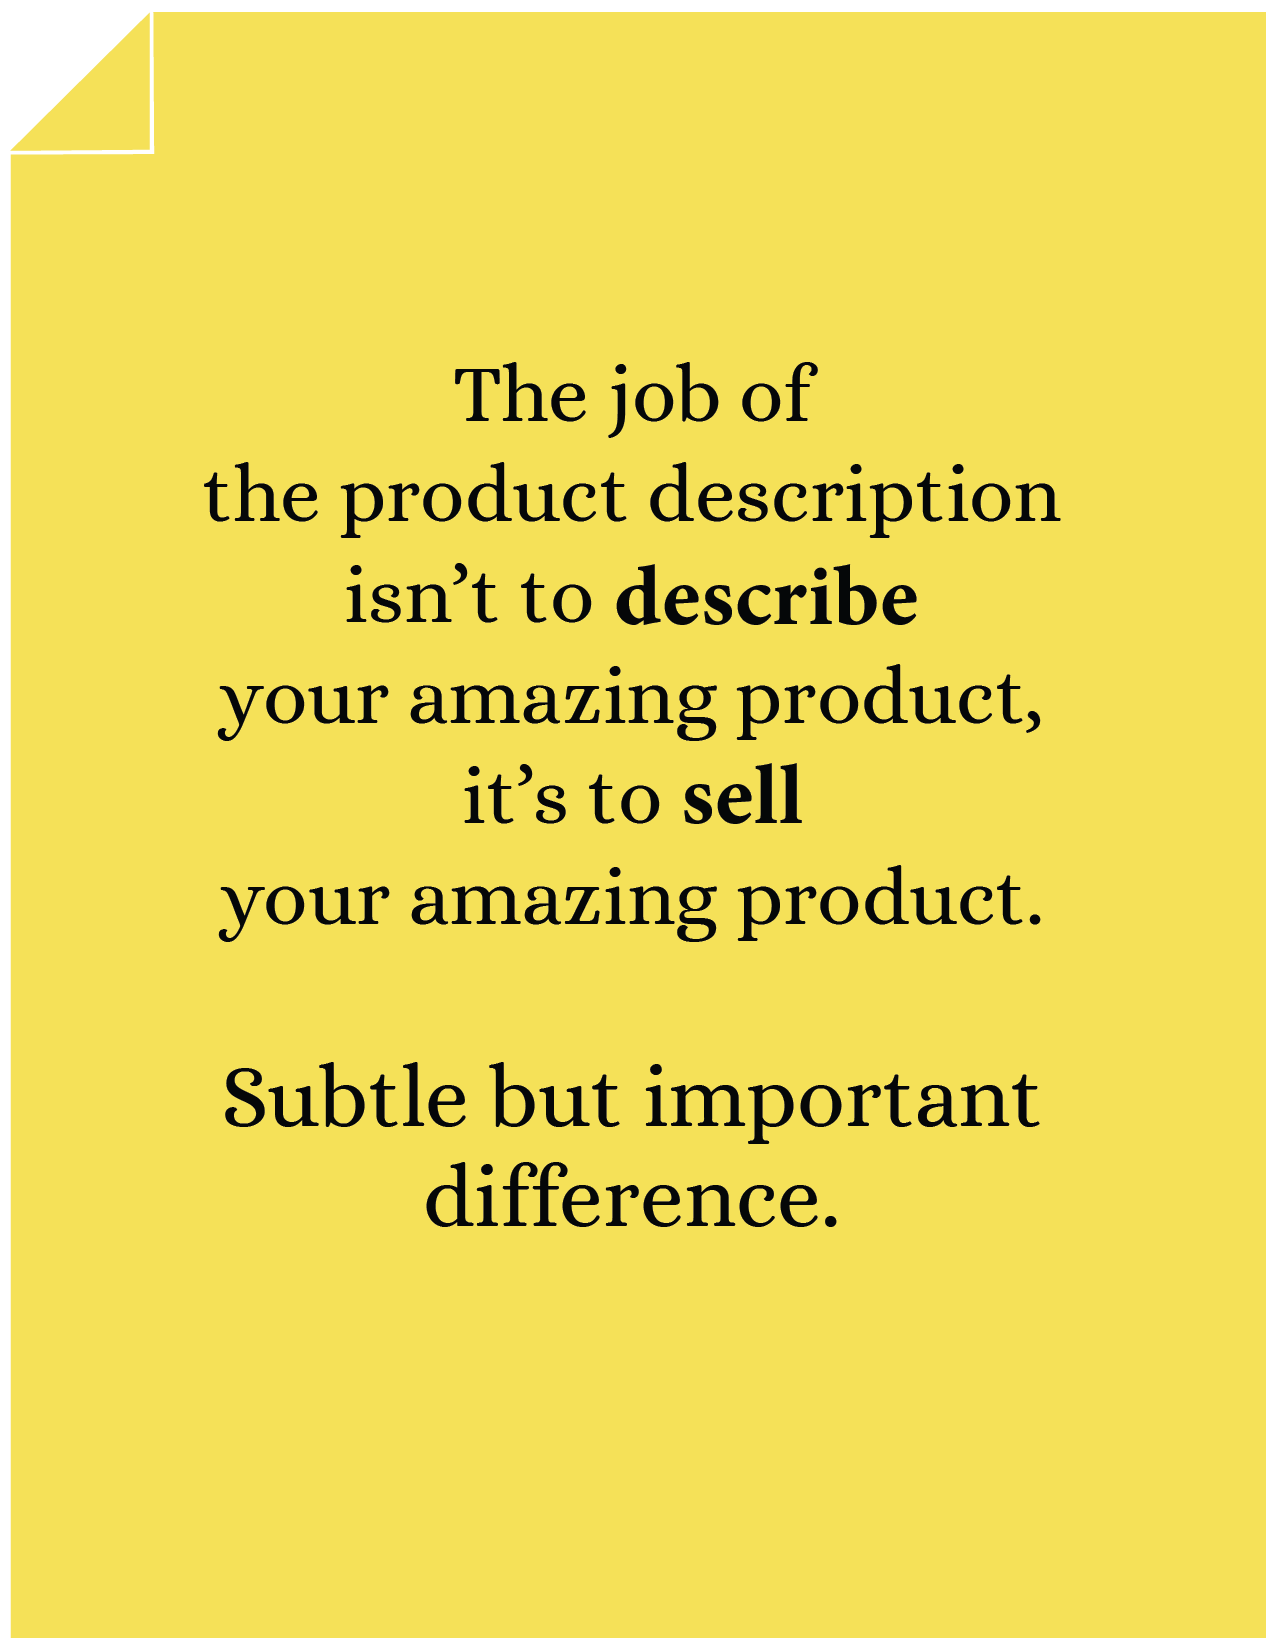 Product Description Optimization The Job of Product Description